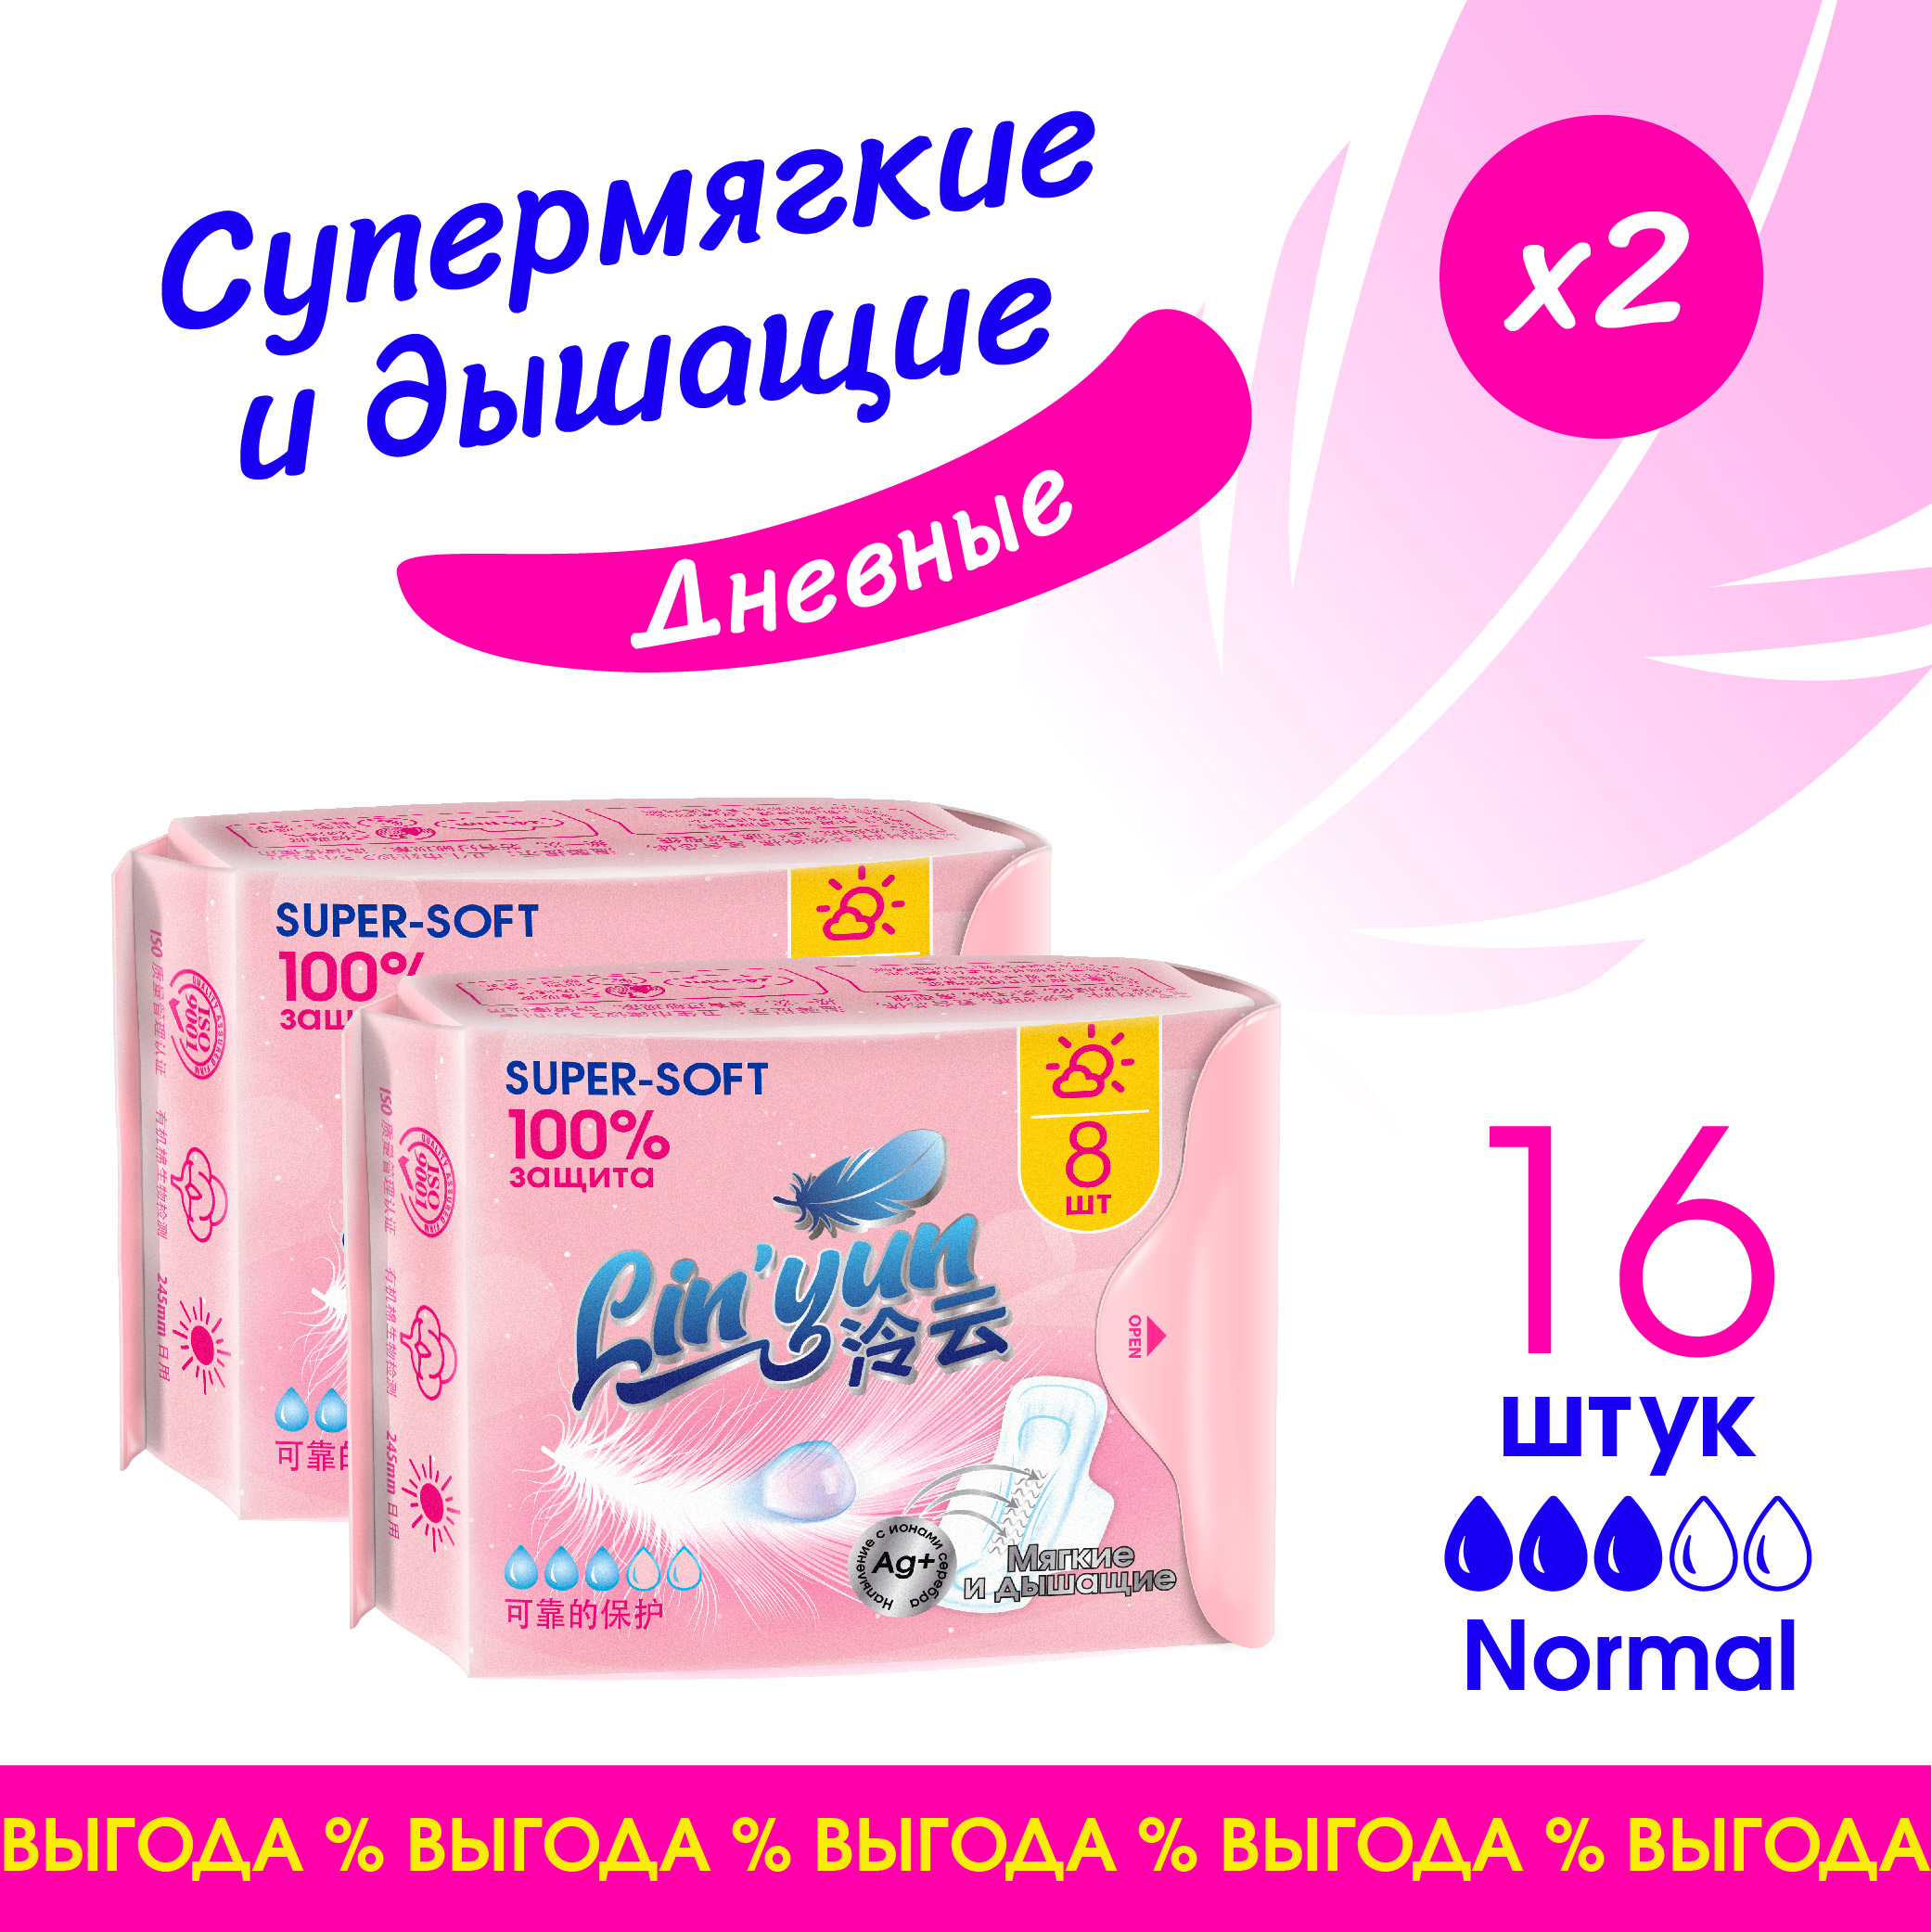 Прокладки женские Lin'yun Линь Юн дневные гигиенические, 2 упаковки по 16 шт e rasy трусы менструальные дневные